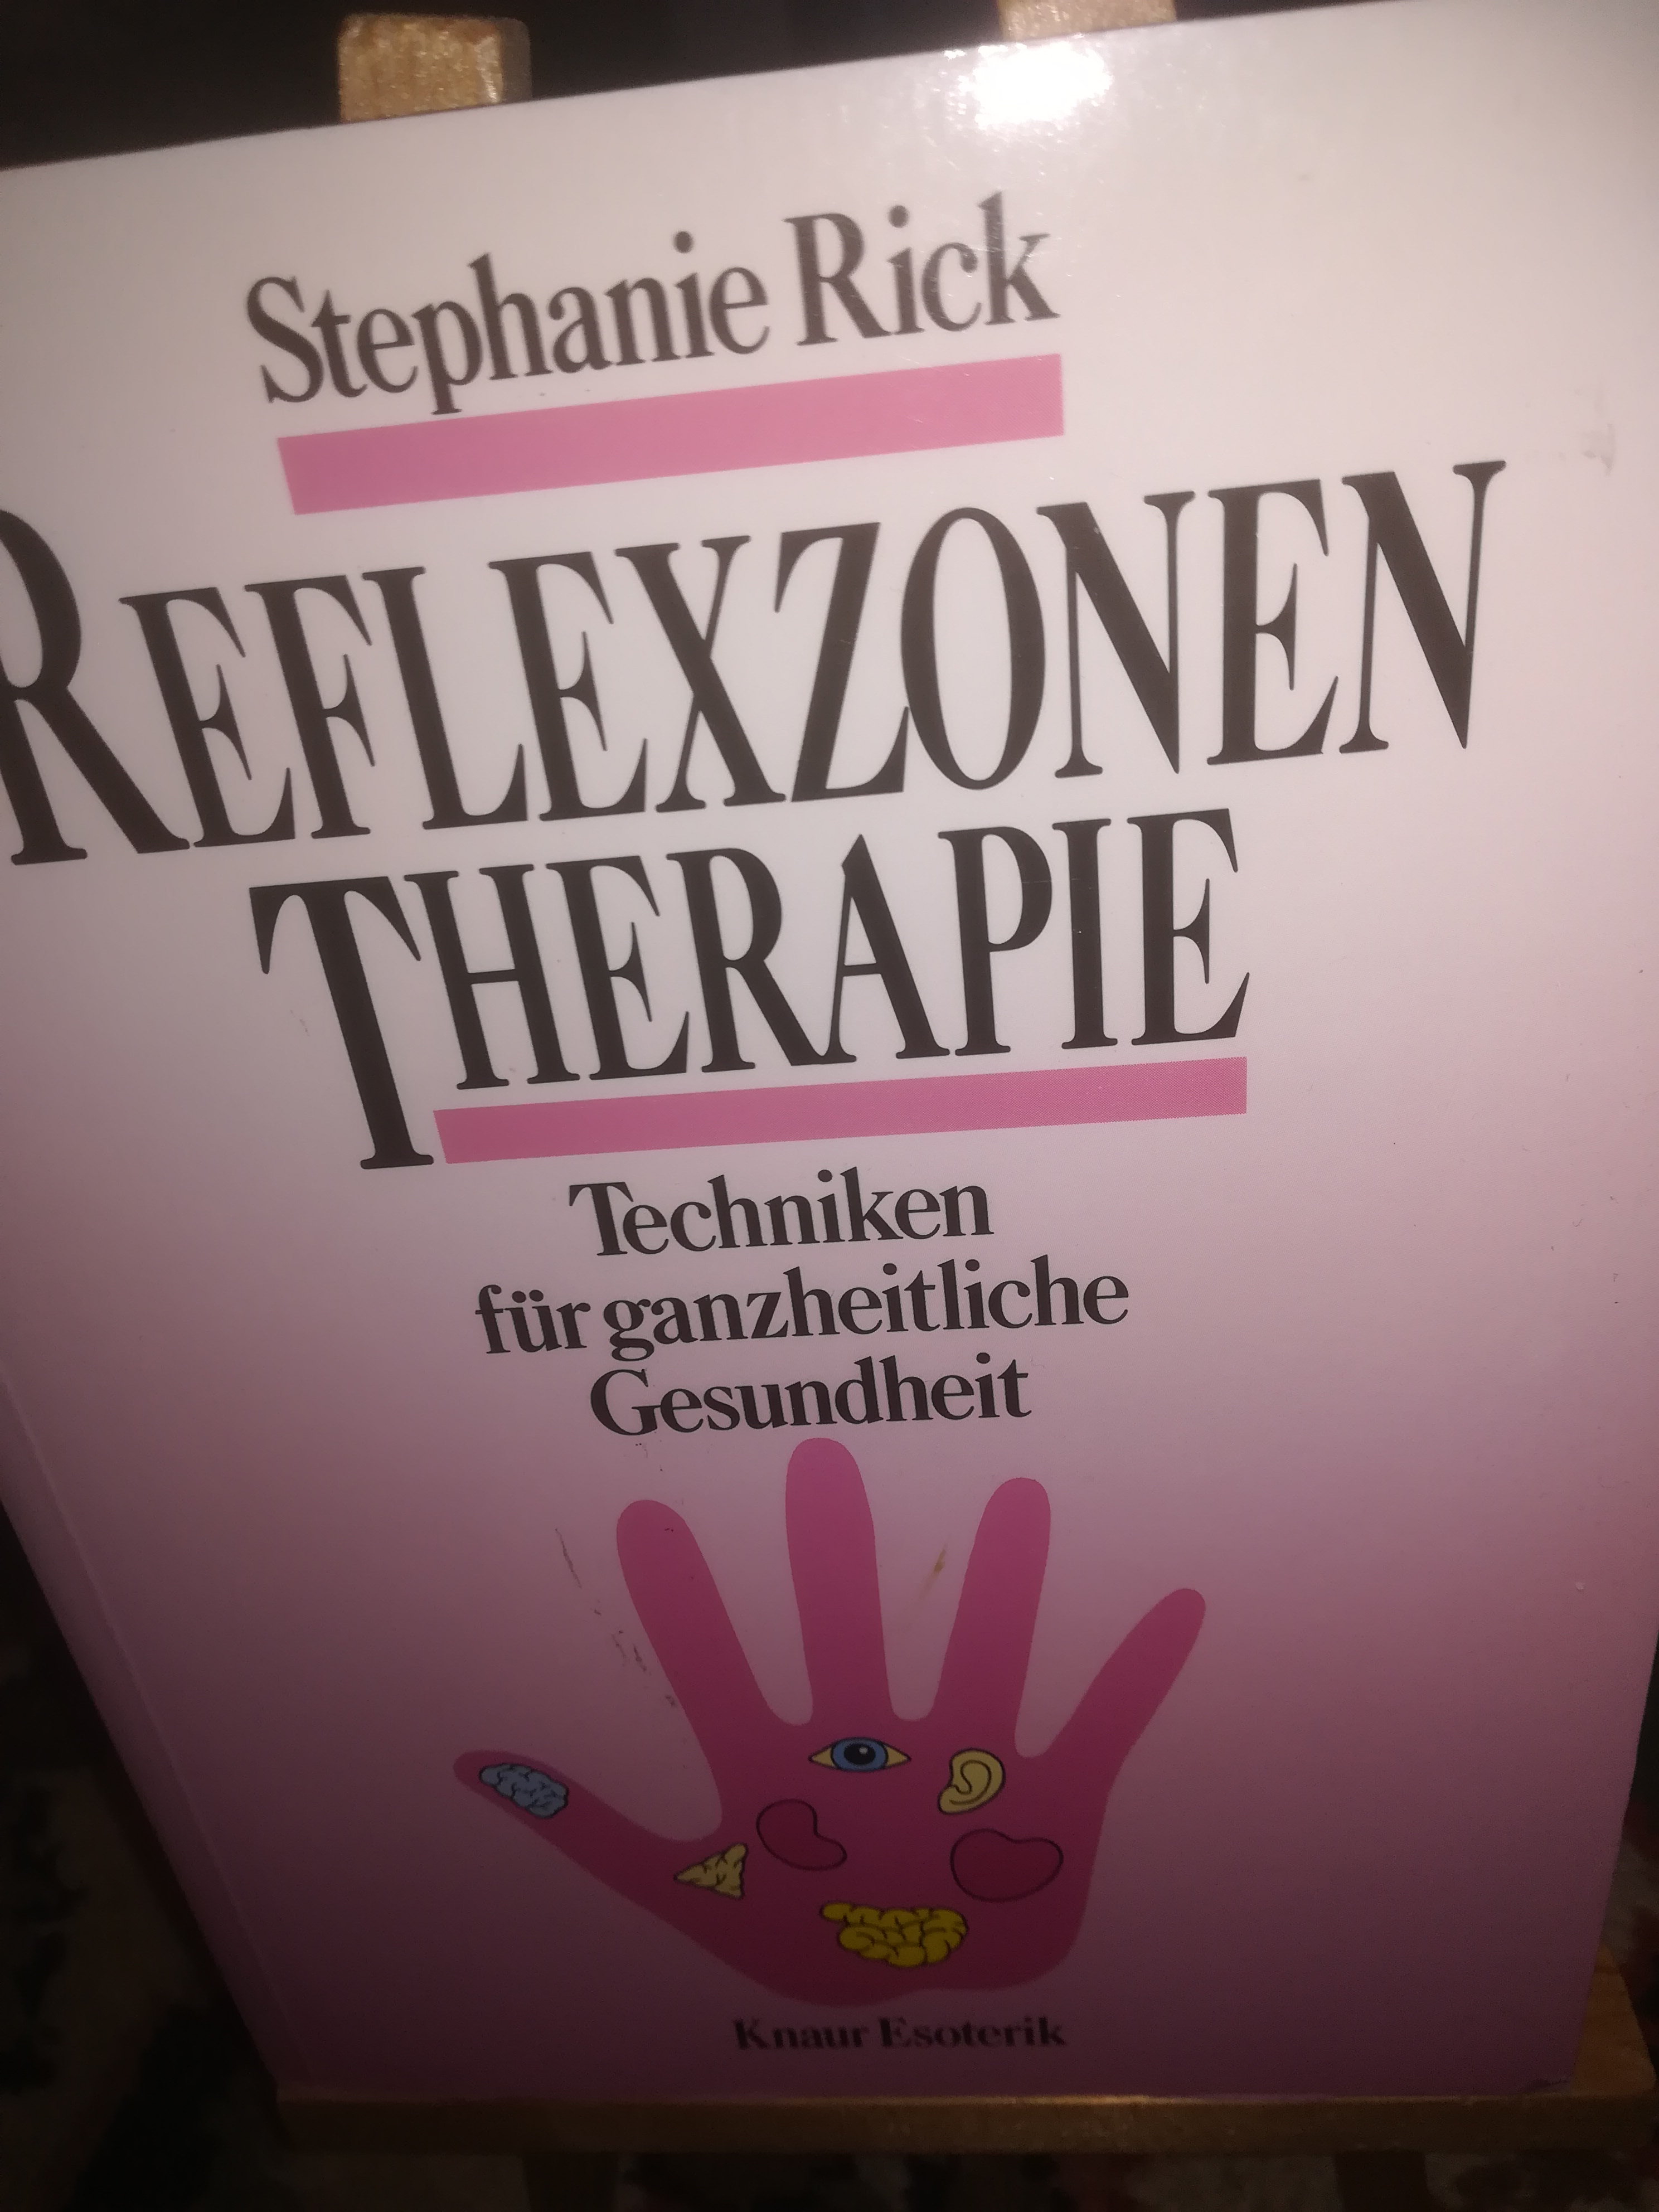 Reflexzonen-Therapie, Techniken für ganzheitliche Gesundheit - Rick Stephanie